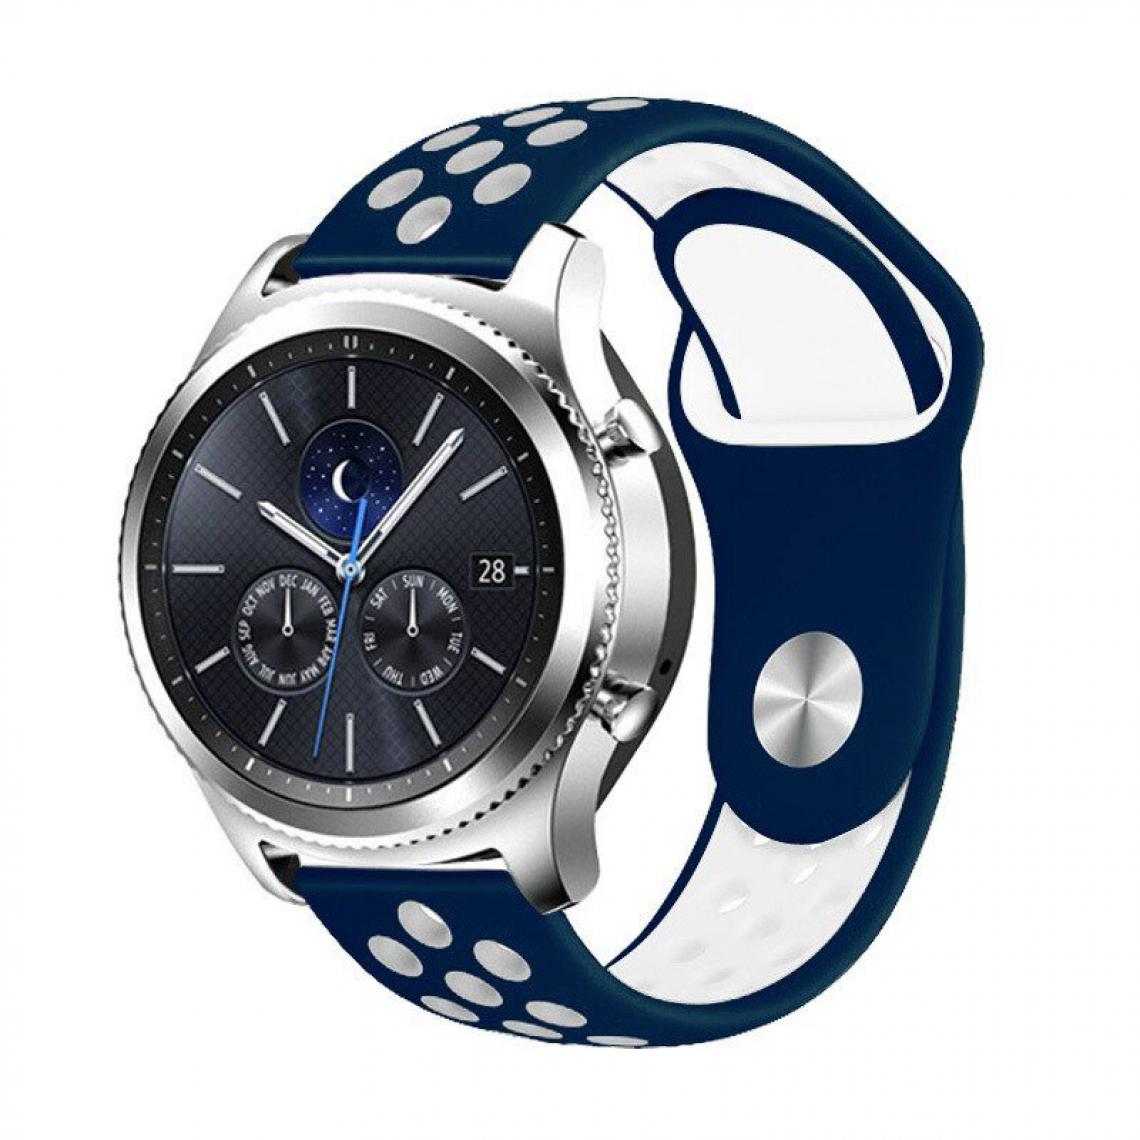 Phonecare - Bracelet SportyStyle pour Honor Magic Watch 2 - 46mm - Bleu foncé / Blanc - Autres accessoires smartphone